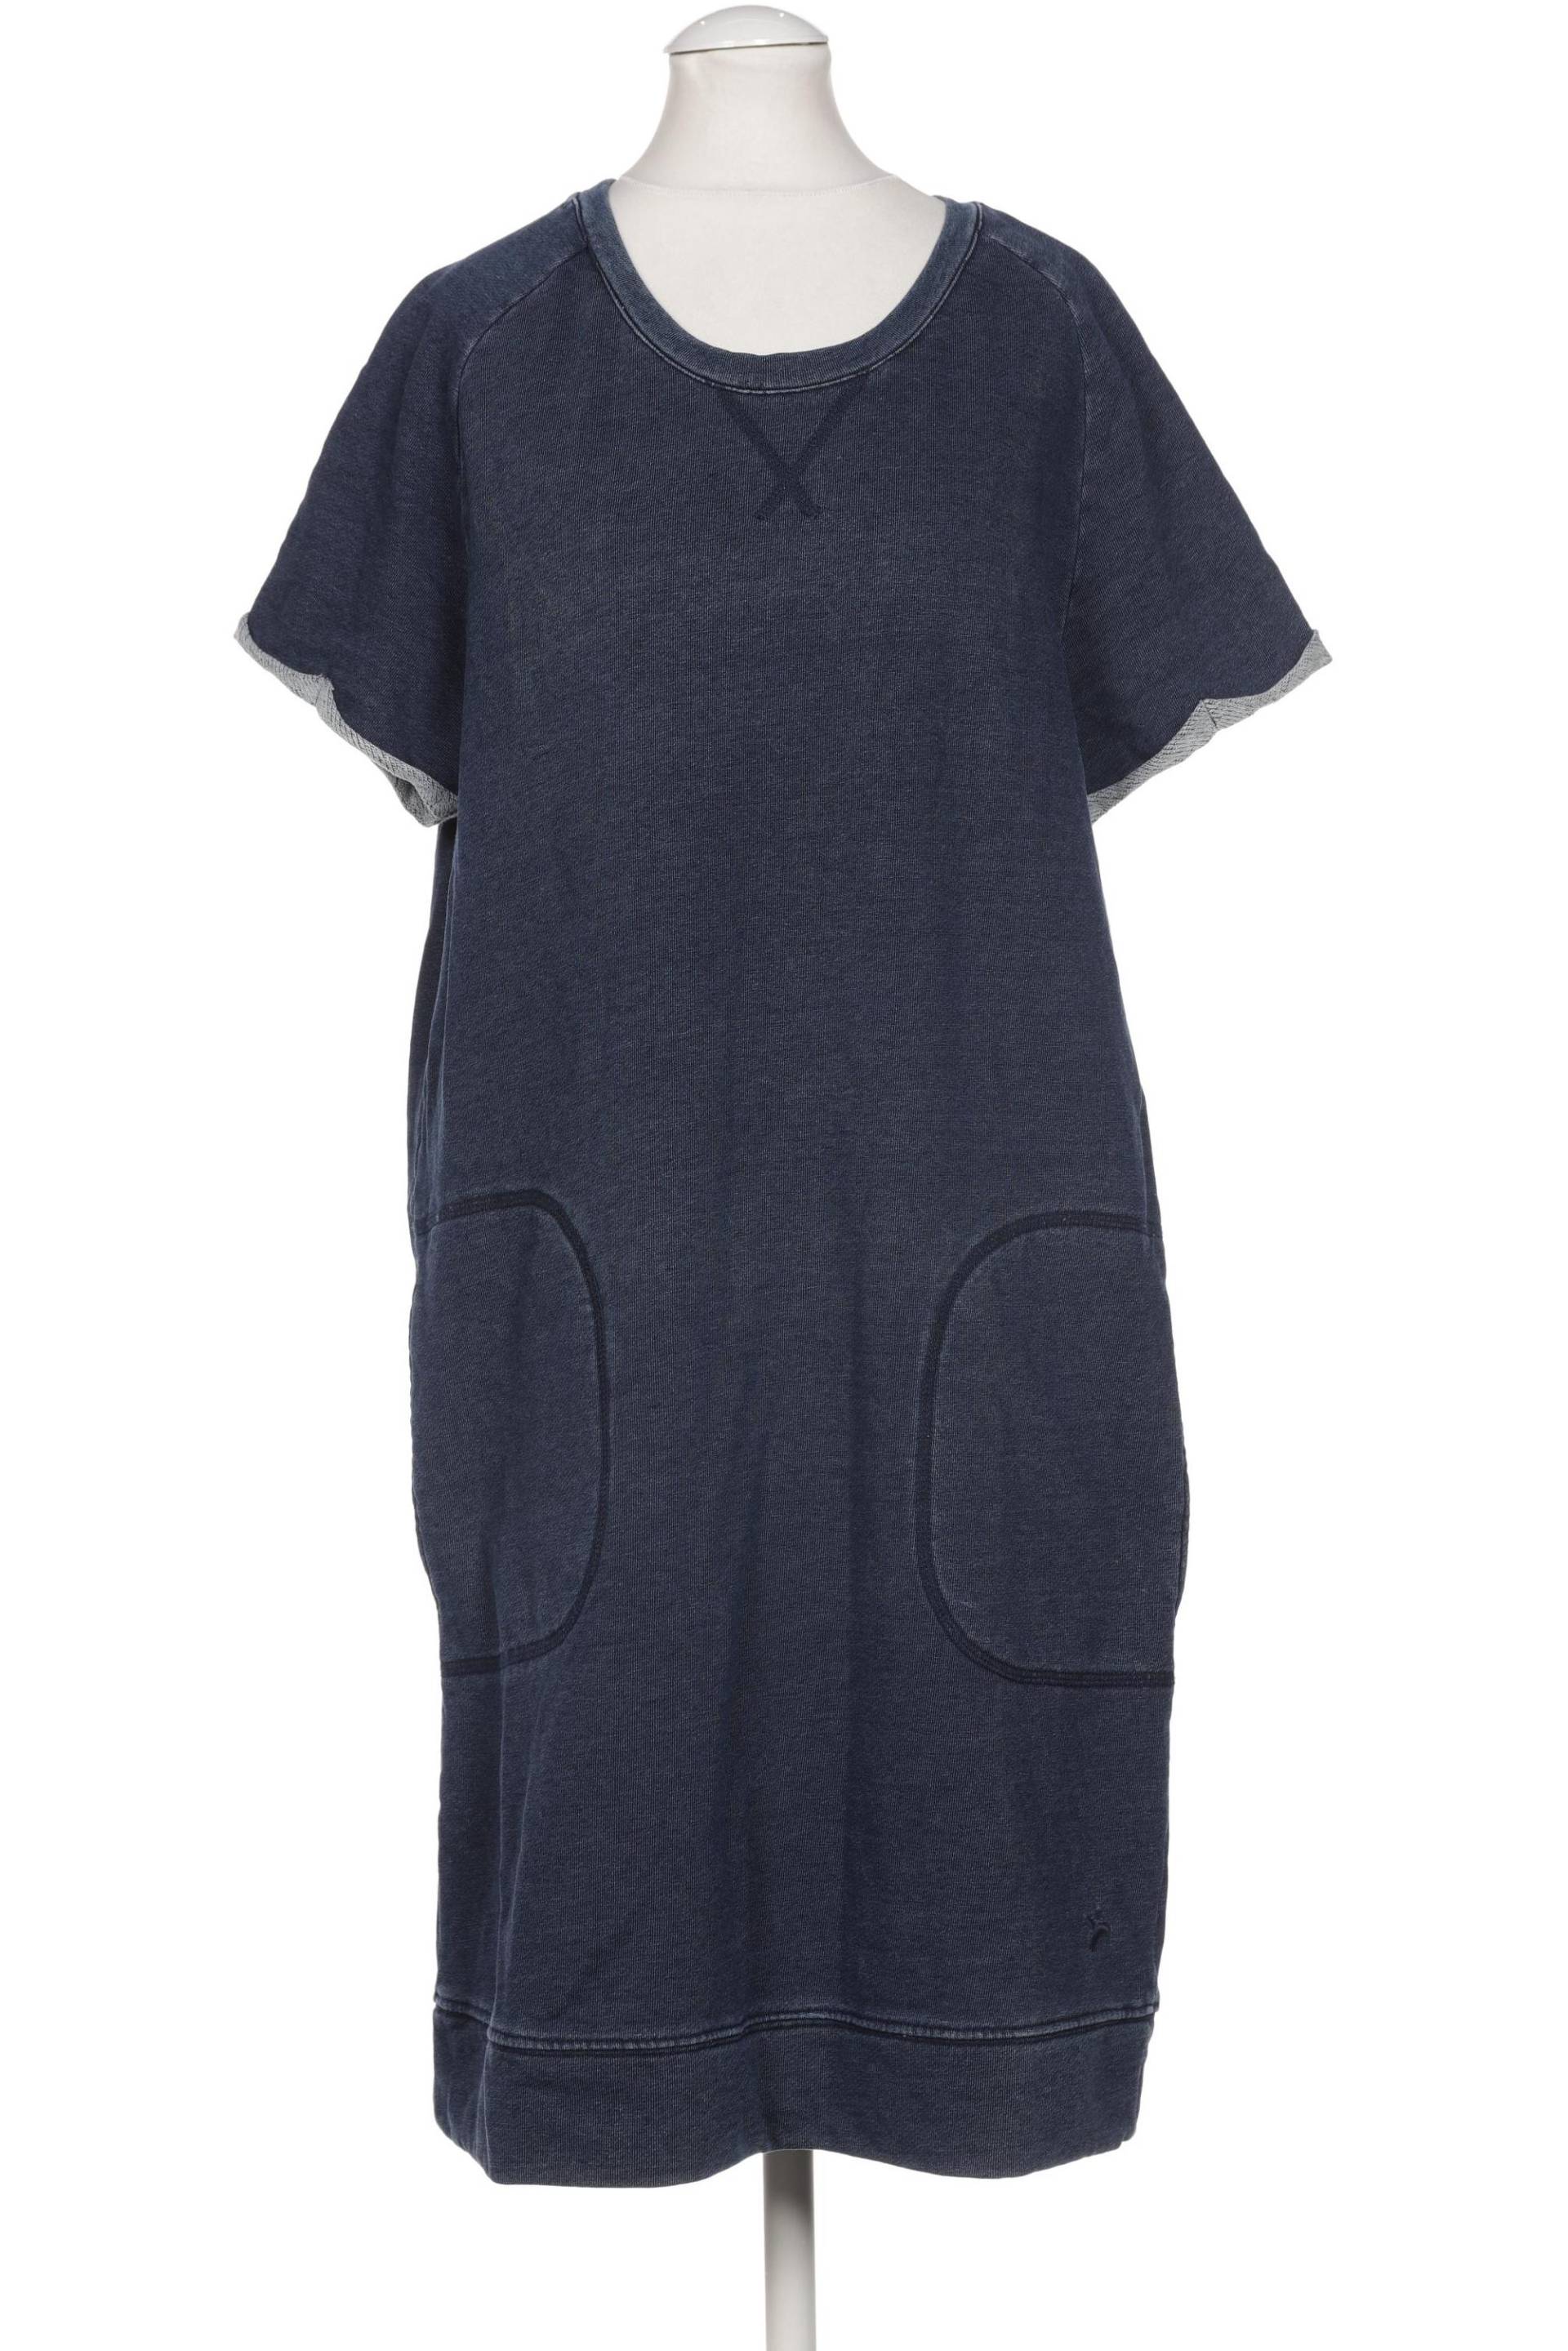 Recolution Damen Kleid, marineblau von recolution